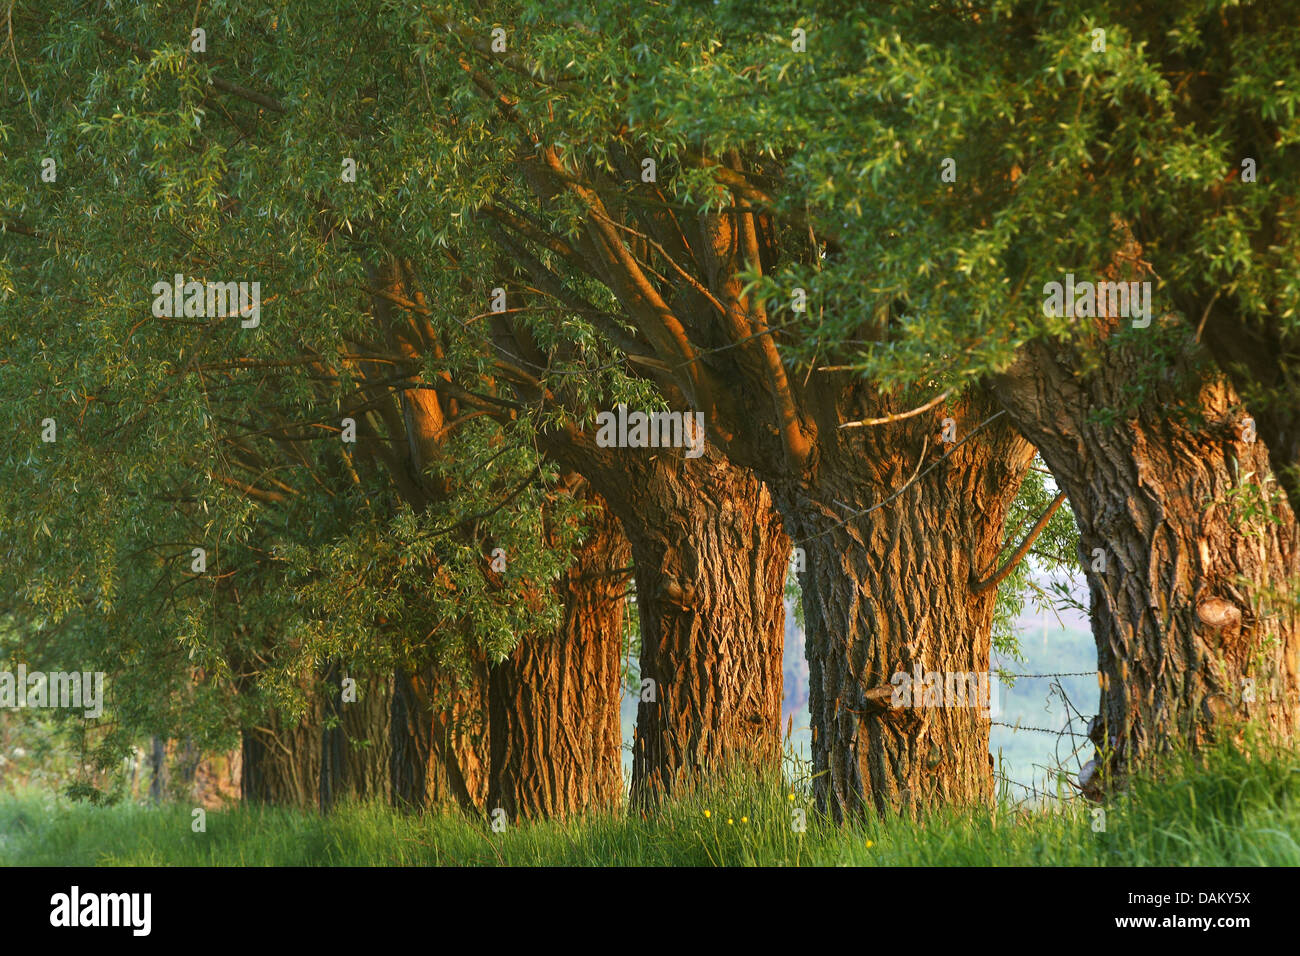 Willow, vimini (Salix spec.), fila di willow nella luce del mattino, Belgio Foto Stock